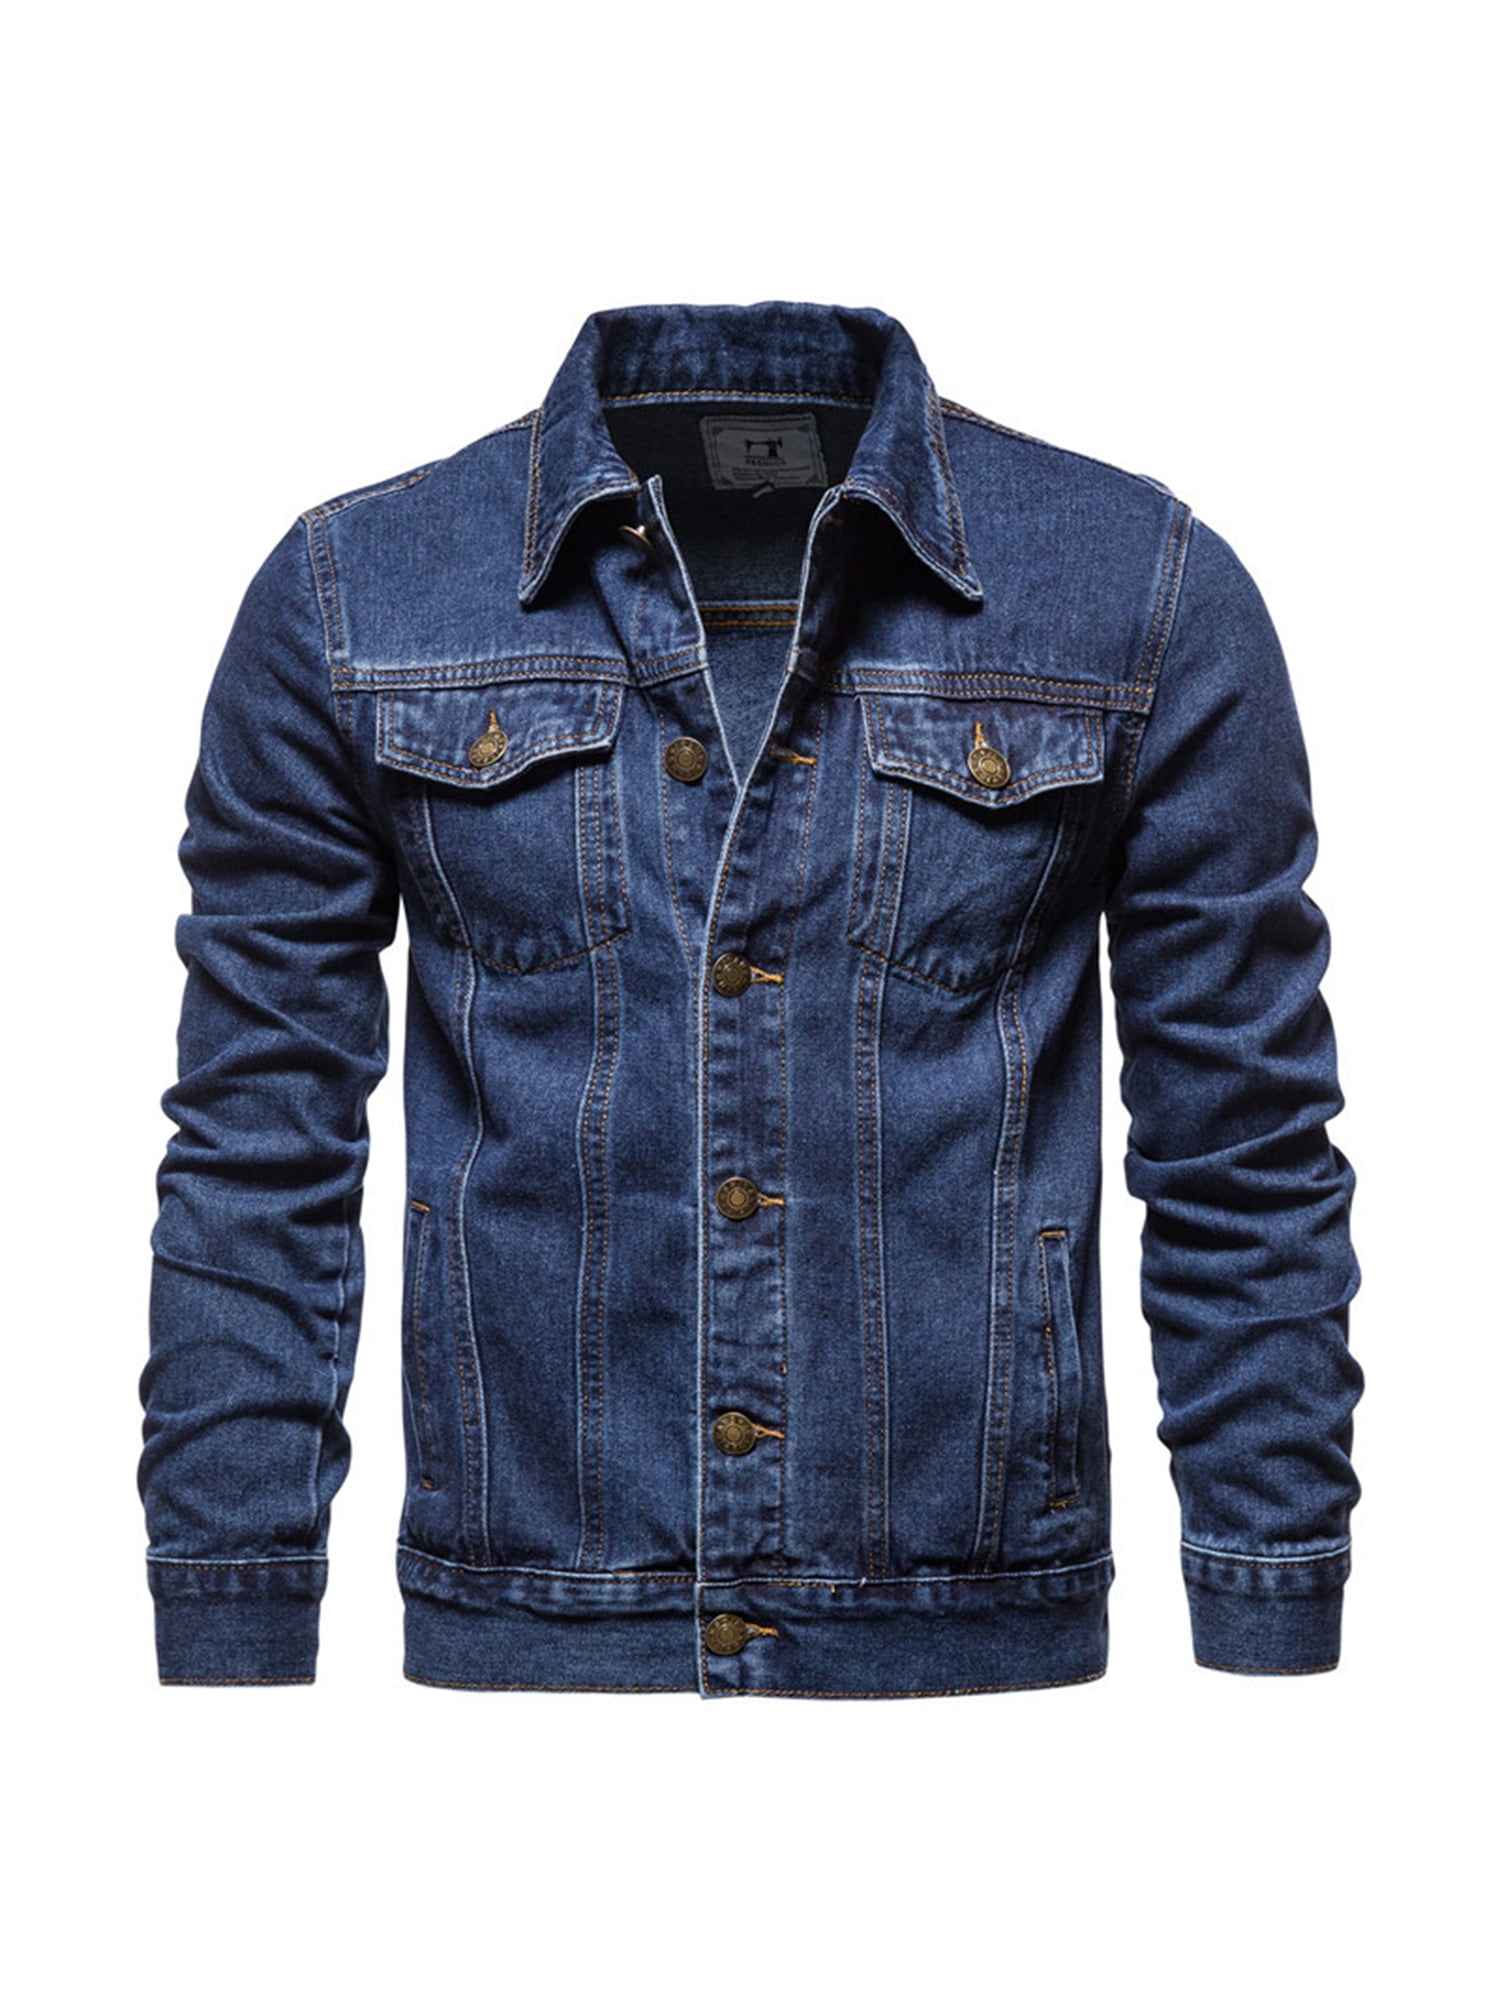 Buy Highlander Navy Blue Denim Jacket for Men Online at Rs.1319 - Ketch-anthinhphatland.vn